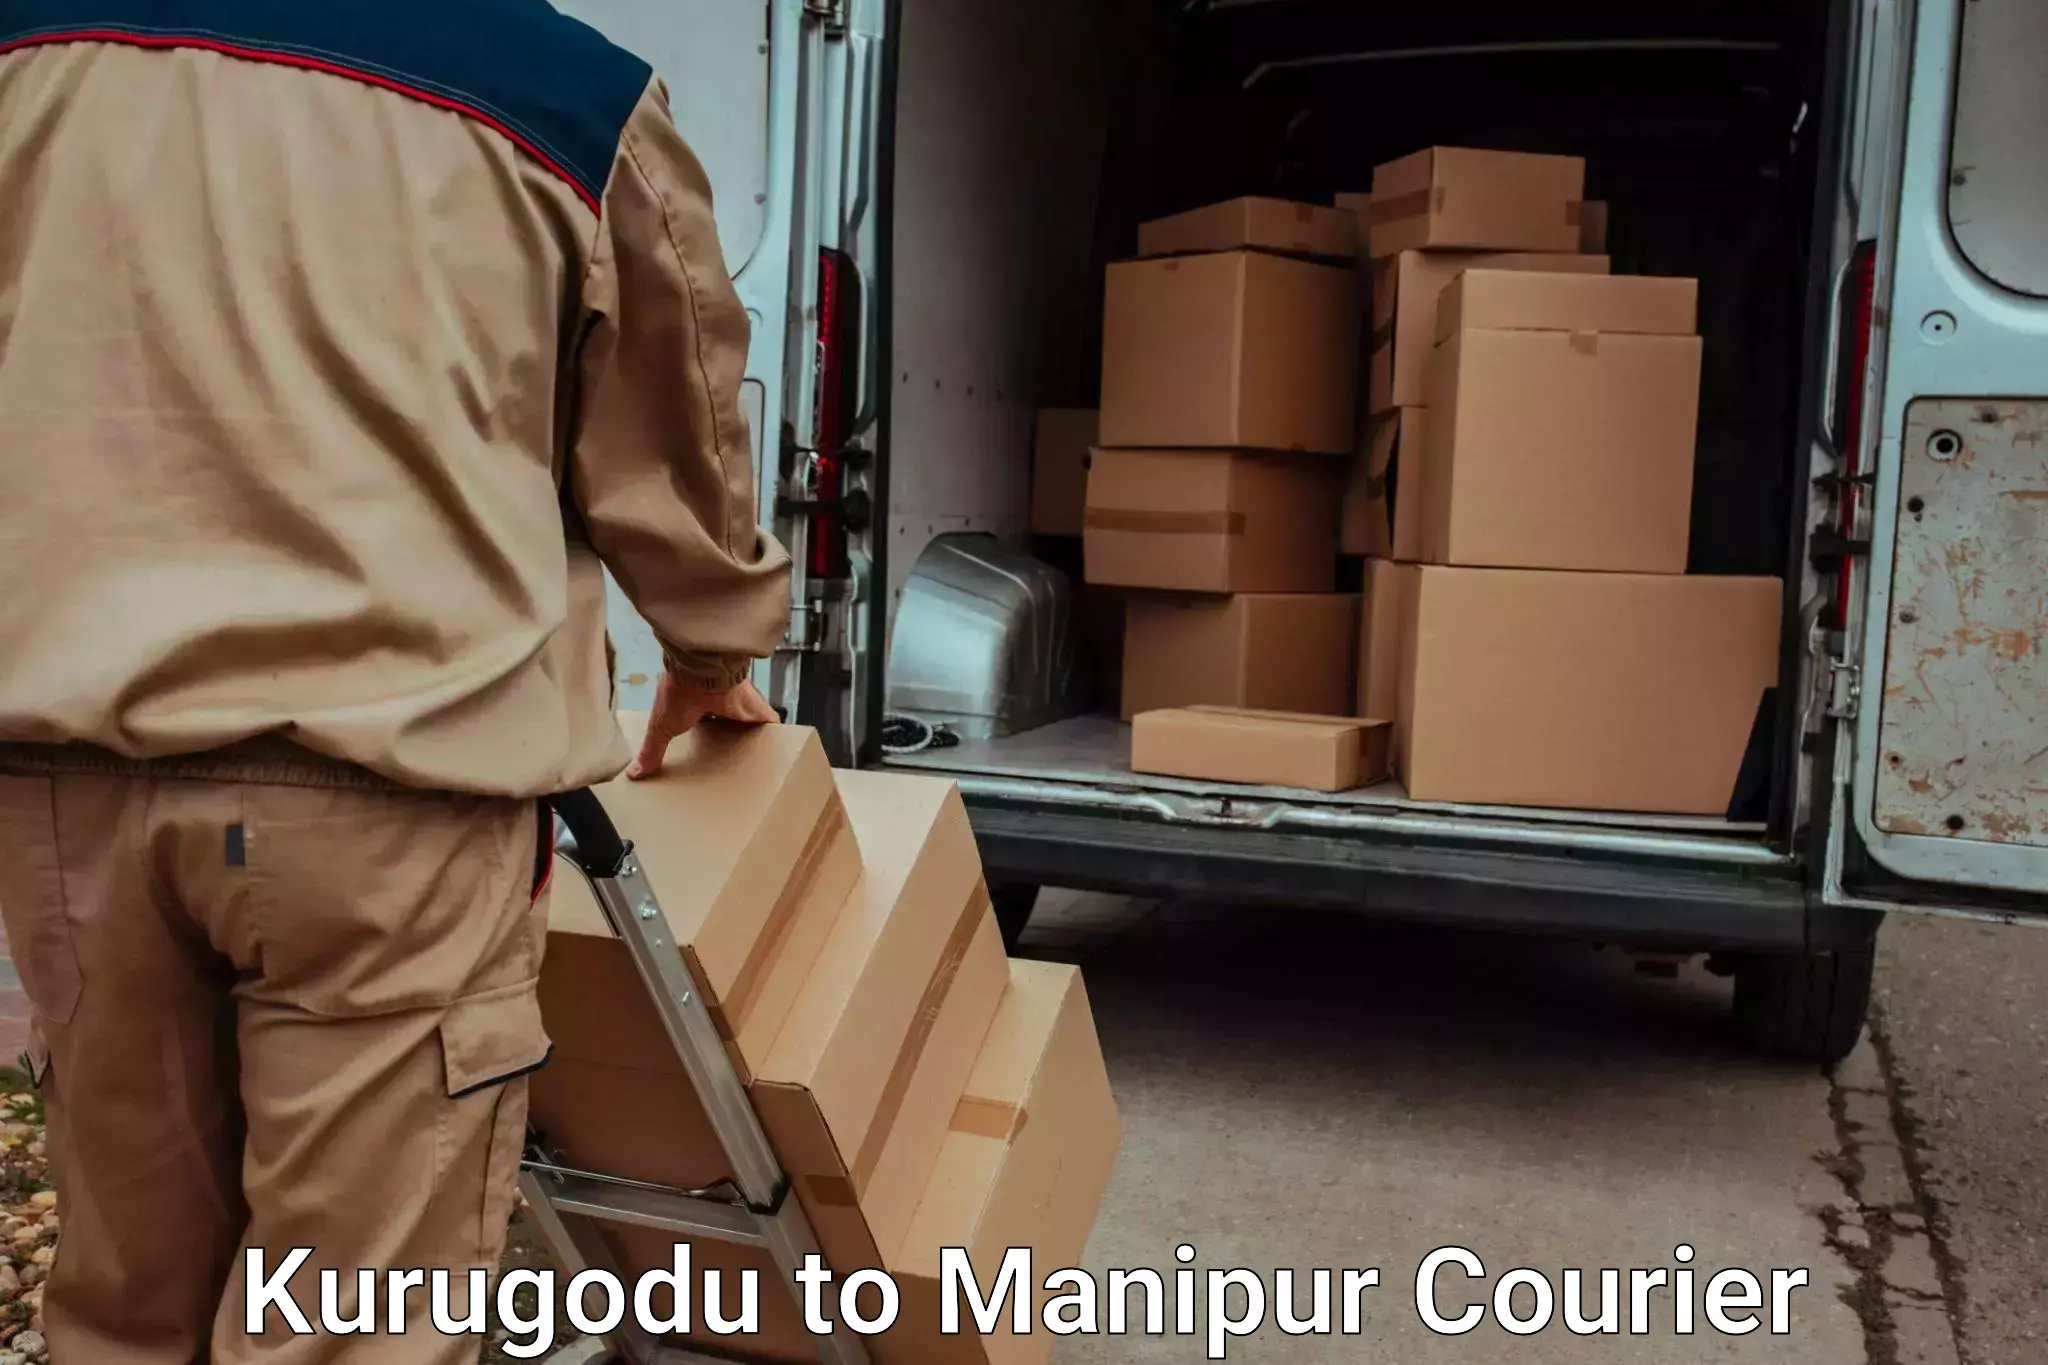 Household goods transport service Kurugodu to Ukhrul